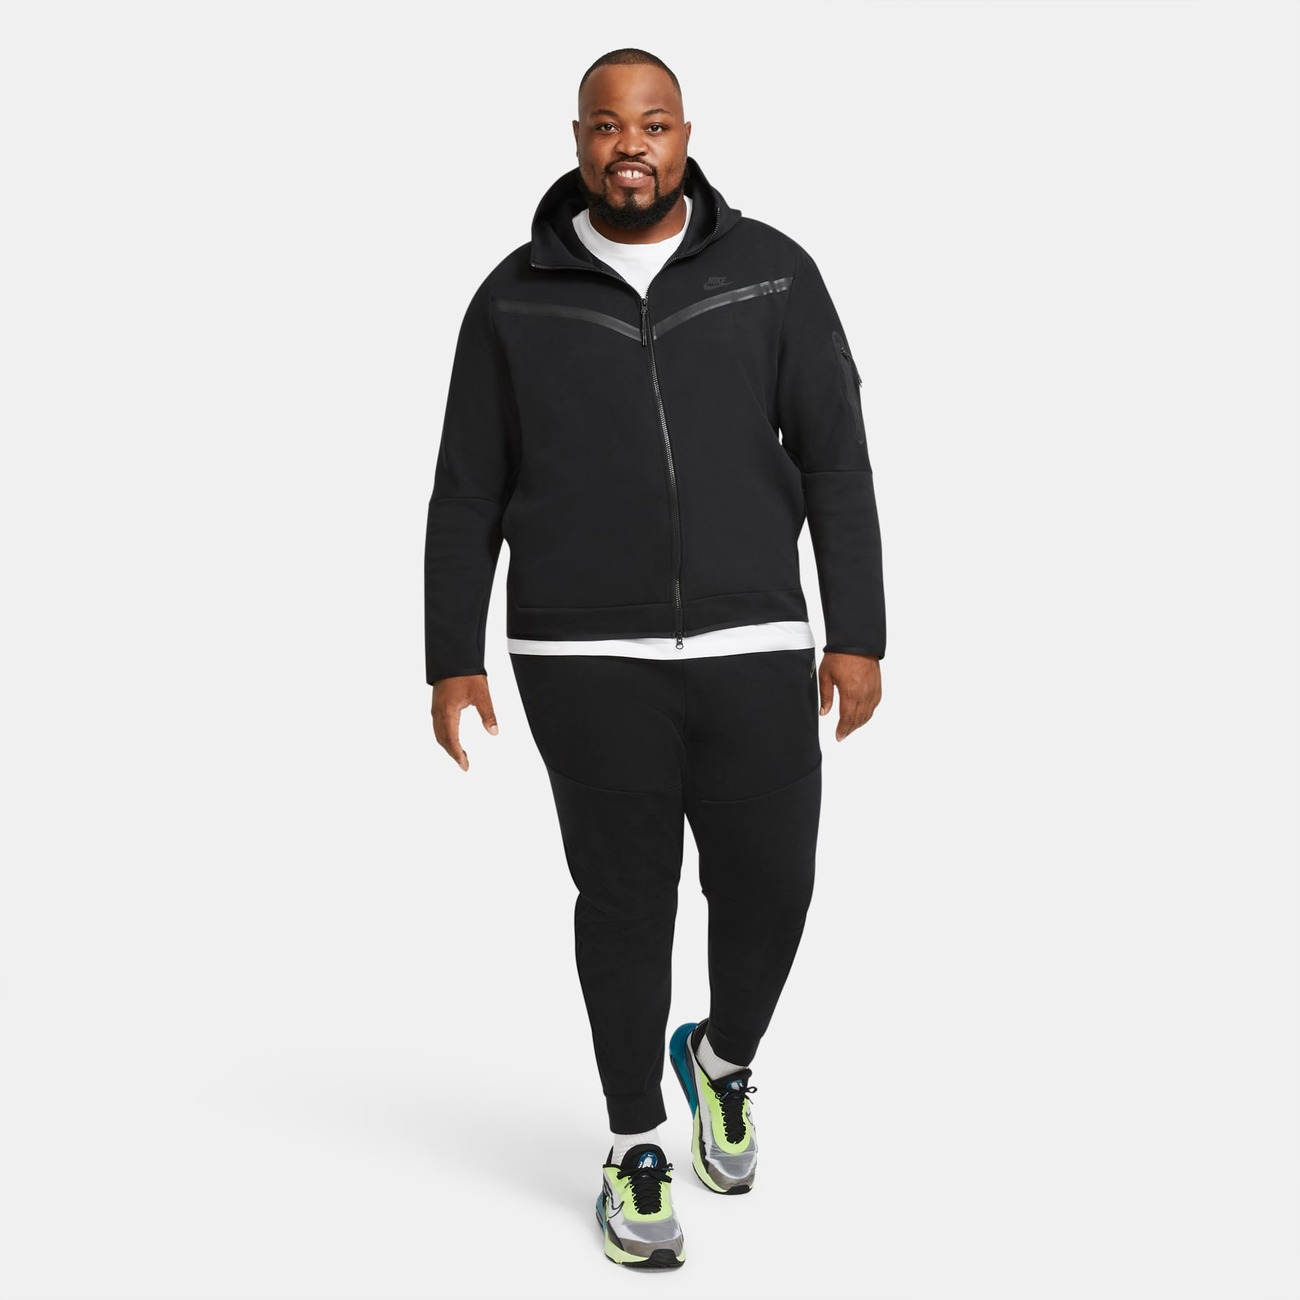 Oferta de Jaqueta Nike Sportswear Tech Fleece Masculina - Nike - Just Do It